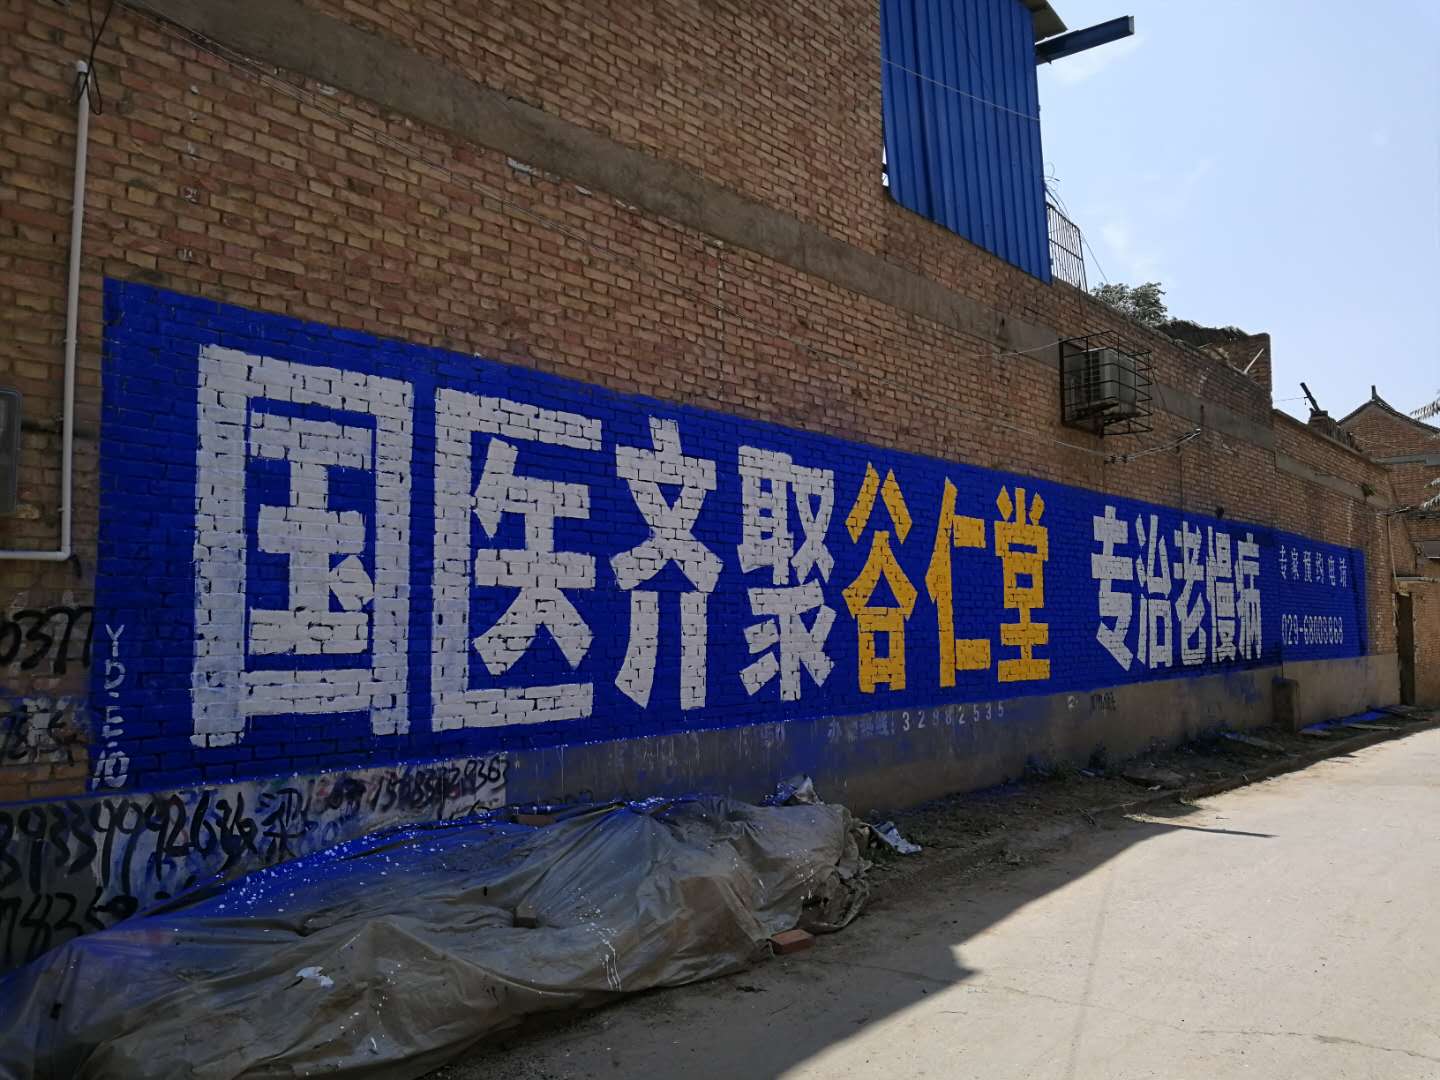 谷仁堂医院低墙手绘墙体广告.jpg